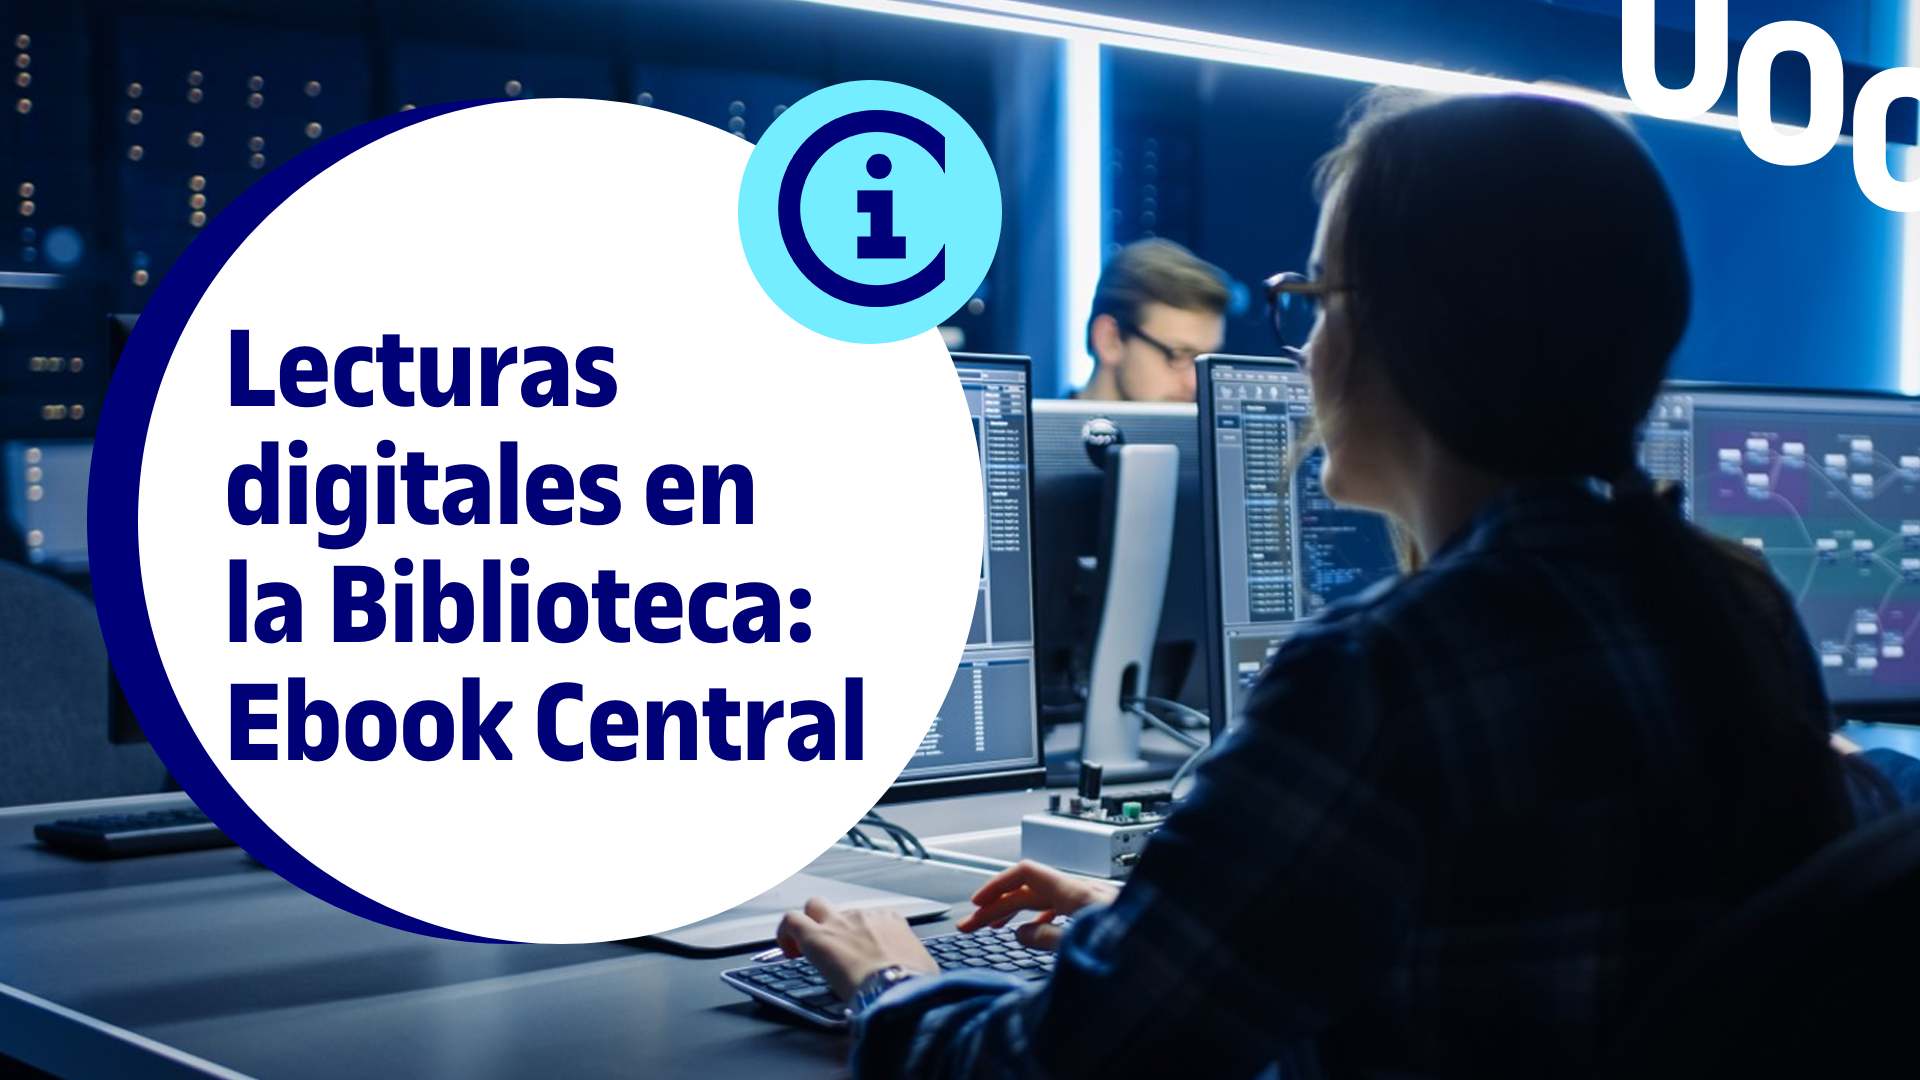 Encuentra lecturas digitales en la Biblioteca: Ebook Central